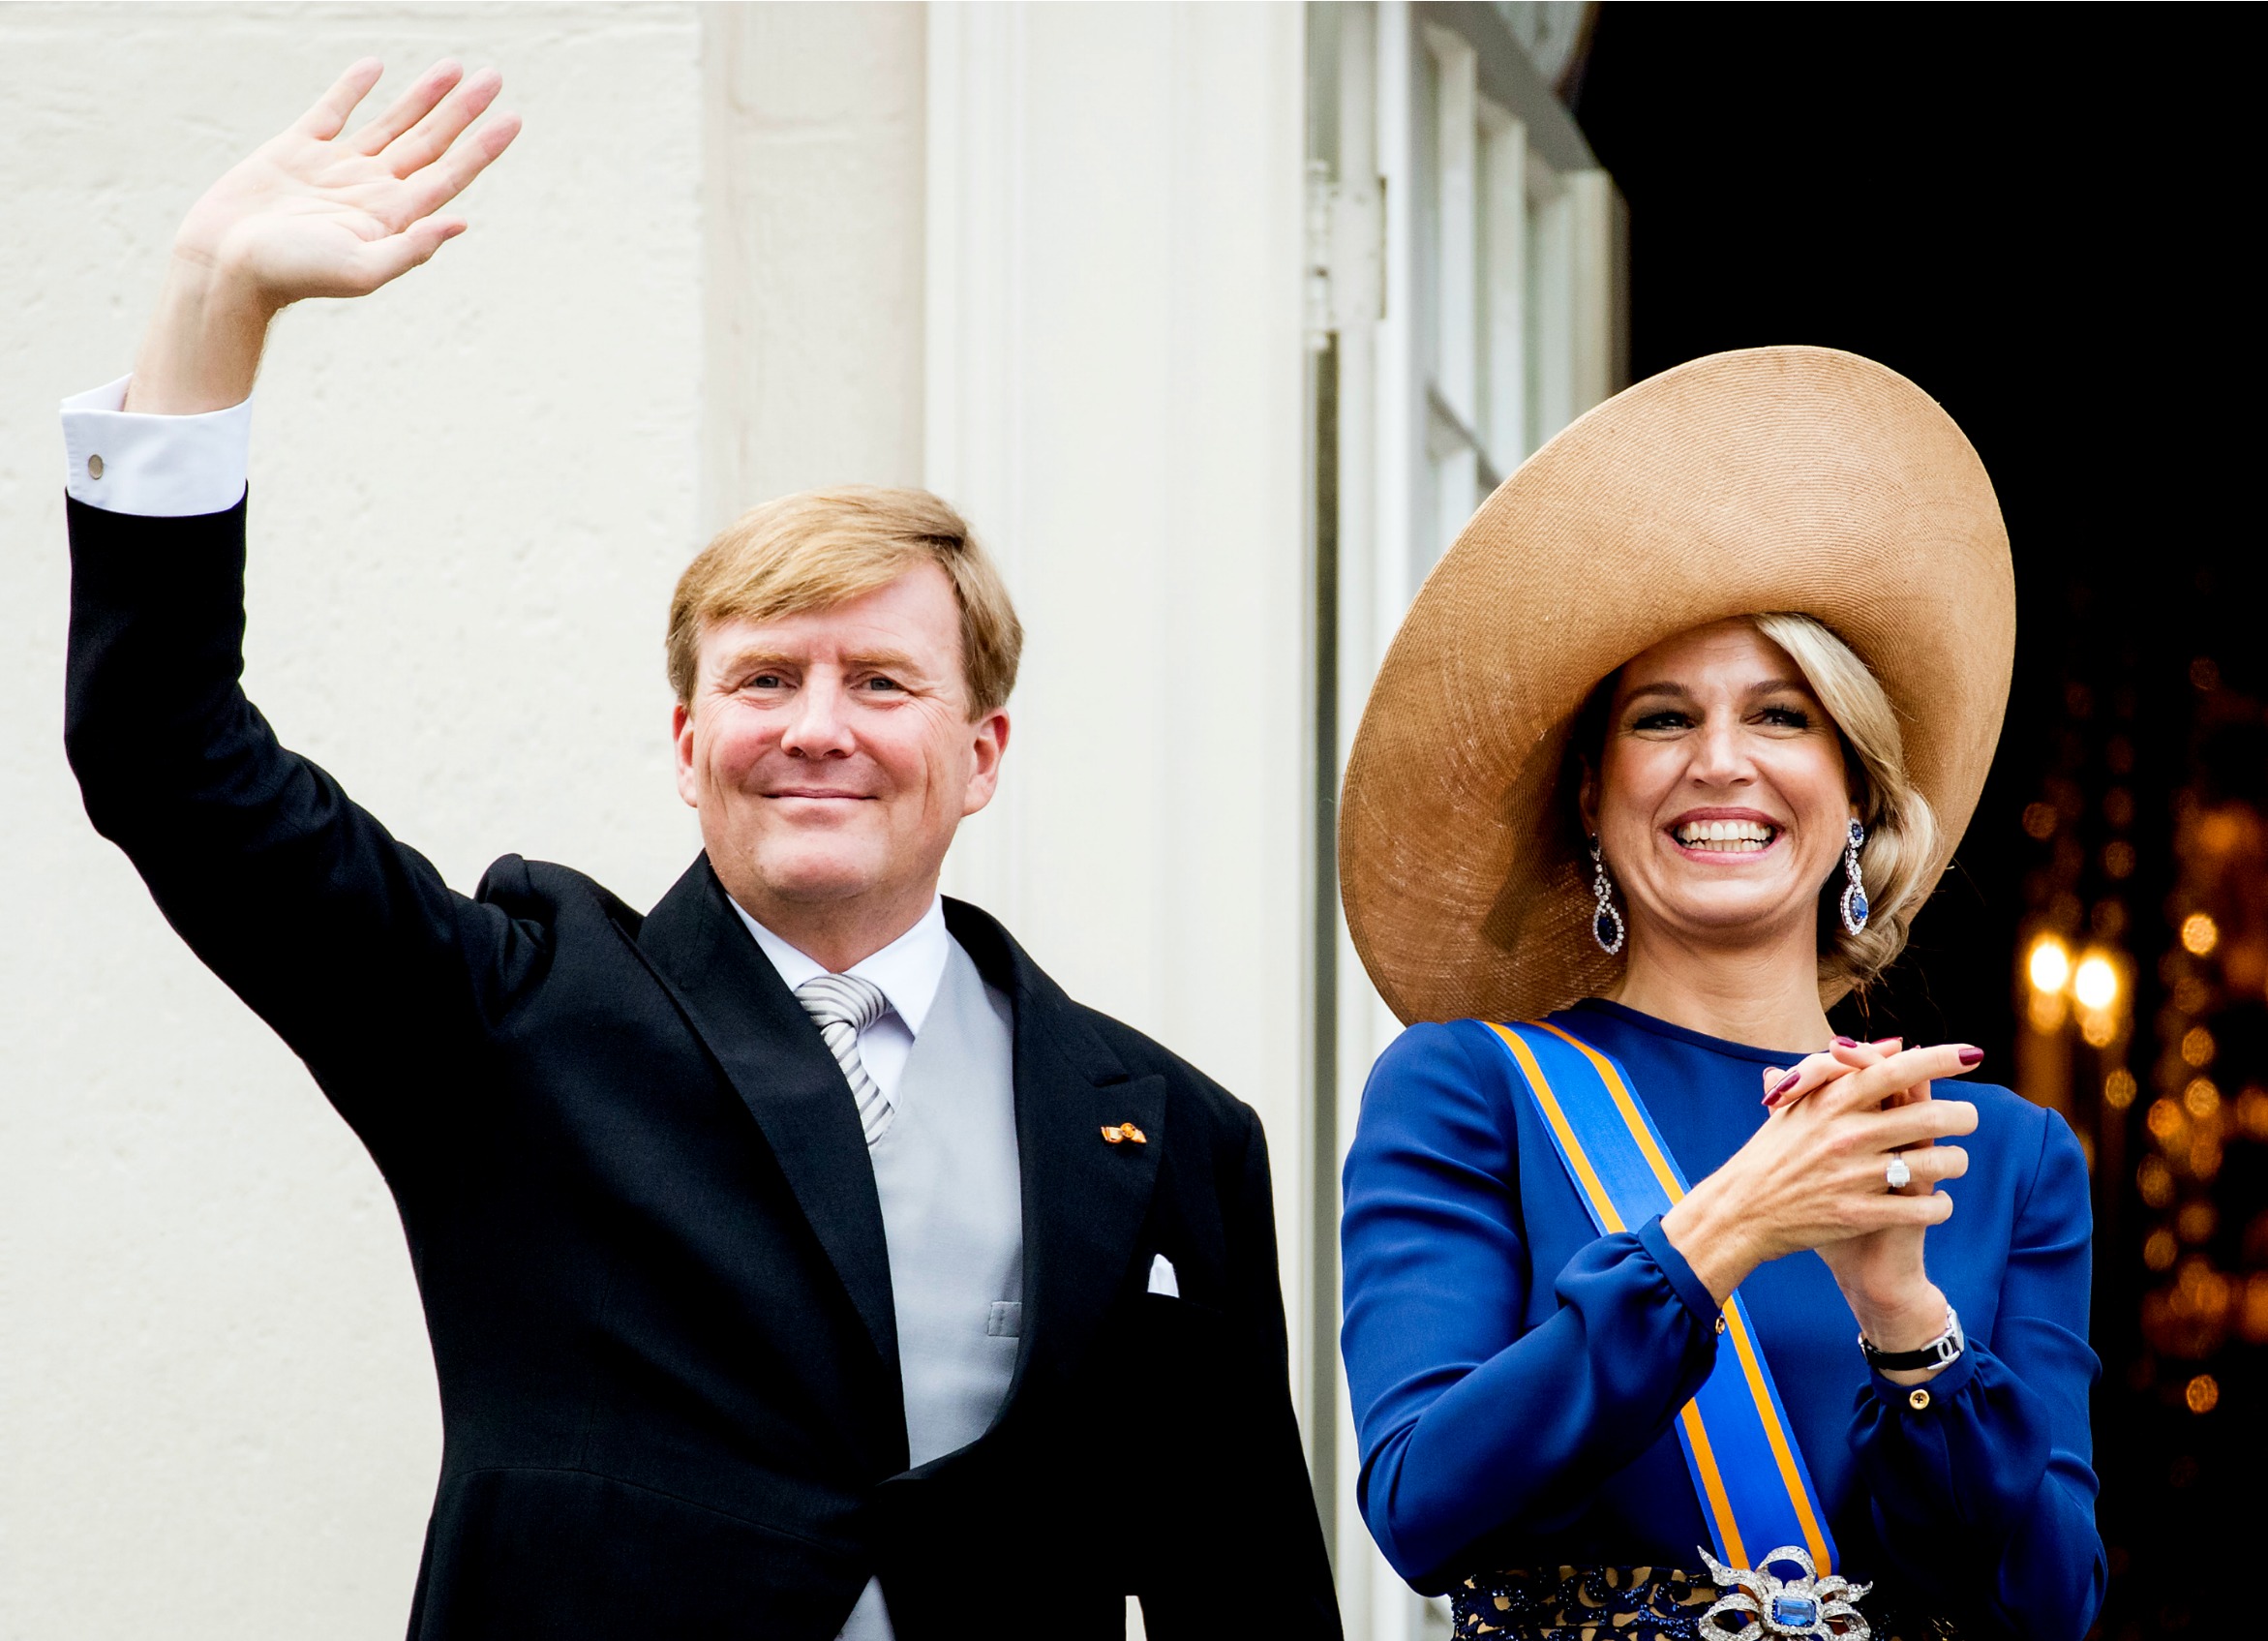 Koning Willem-Alexander krijgt volgend jaar een “grondwettelijke uitkering” van 888.000 euro. Dat is 22.000 euro meer dan dit jaar. Dat blijkt dinsdag uit de begroting van ‘De Koning’, die is opgenomen in de Miljoenennota (pdf). Ook de uitkering van koningin Máxima stijgt flink, met 12.000 euro naar 352.000 euro. Prinses Beatrix ontvangt volgend jaar een salaris van 502.000 euro. Dat is een toename van 13.000 euro. De stijging lag in de lijn der verwachtingen, omdat de drie trendvolger zijn van de ambtenaren, met name van de vicepresident van de Raad van State. Onkostenvergoeding De drie leden van het Koninklijk Huis krijgen naast hun uitkering ook een onkostenvergoeding, waarvan ze bijvoorbeeld hun meest directe medewerkers moeten betalen. Willem-Alexander krijgt hiervoor 4,66 miljoen euro. Máxima en Beatrix moeten het doen met respectievelijk 606.000 euro en 1 miljoen euro aan onkostenvergoeding. Het koningshuis staat in totaal voor 41.421.000 euro in de boeken. Dat is bijna 800.000 euro meer dan dit jaar. Functionele uitgaven Voor ‘functionele uitgaven’ is ruim 27 miljoen euro bestemd. Daaronder vallen bijvoorbeeld personeelskosten, het gebruik van het regeringsvliegtuig, het rijtuigenpark, belkosten, faunabeheer en verwarming en verlichting van de paleizen. Voor zaken als de Rijksvoorlichtingsdienst en het Kabinet van de Koning (dat onder meer het contact tussen het staatshoofd en de regering onderhoudt) is 5,7 miljoen euro begroot. Wat levert koningshuis op? De eeuwige vraag is of de kosten van het koningshuis opweegt tegen de voordelen. Ja, koning Willem-Alexander, koningin Máxima en prinses Beatrix ontvangen een flinke uitkering en hoeven daarover geen loon- en inkomstenbelasting te betalen. Maar daar staat tegenover dat de koning op buitenlandse handelsmissies mogelijk deuren kan openen die anders gesloten blijven. Uit een onderzoek van Regioplan uit 2011 naar de effecten van economische missies, blijkt dat ruim de helft van de deelnemende bedrijven aangeeft economisch voordeel uit de deelname te hebben behaald. Van de ondervraagde bedrijven die de missie succesvol achtten, geeft ruim twee derde aan dit te danken te hebben aan de contacten van Nederlandse bewindspersonen. De rol van het Koninklijk Huis wordt niet gespecificeerd. Professor macro-economie Harry van Dalen van de universiteit van Tilburg becijferde een aantal jaar geleden dat een monarchie de economie stimuleert met jaarlijks 1 procent groei. Het koningshuis levert volgens hem de Nederlandse economie jaarlijks 4 tot 5 miljard euro op.